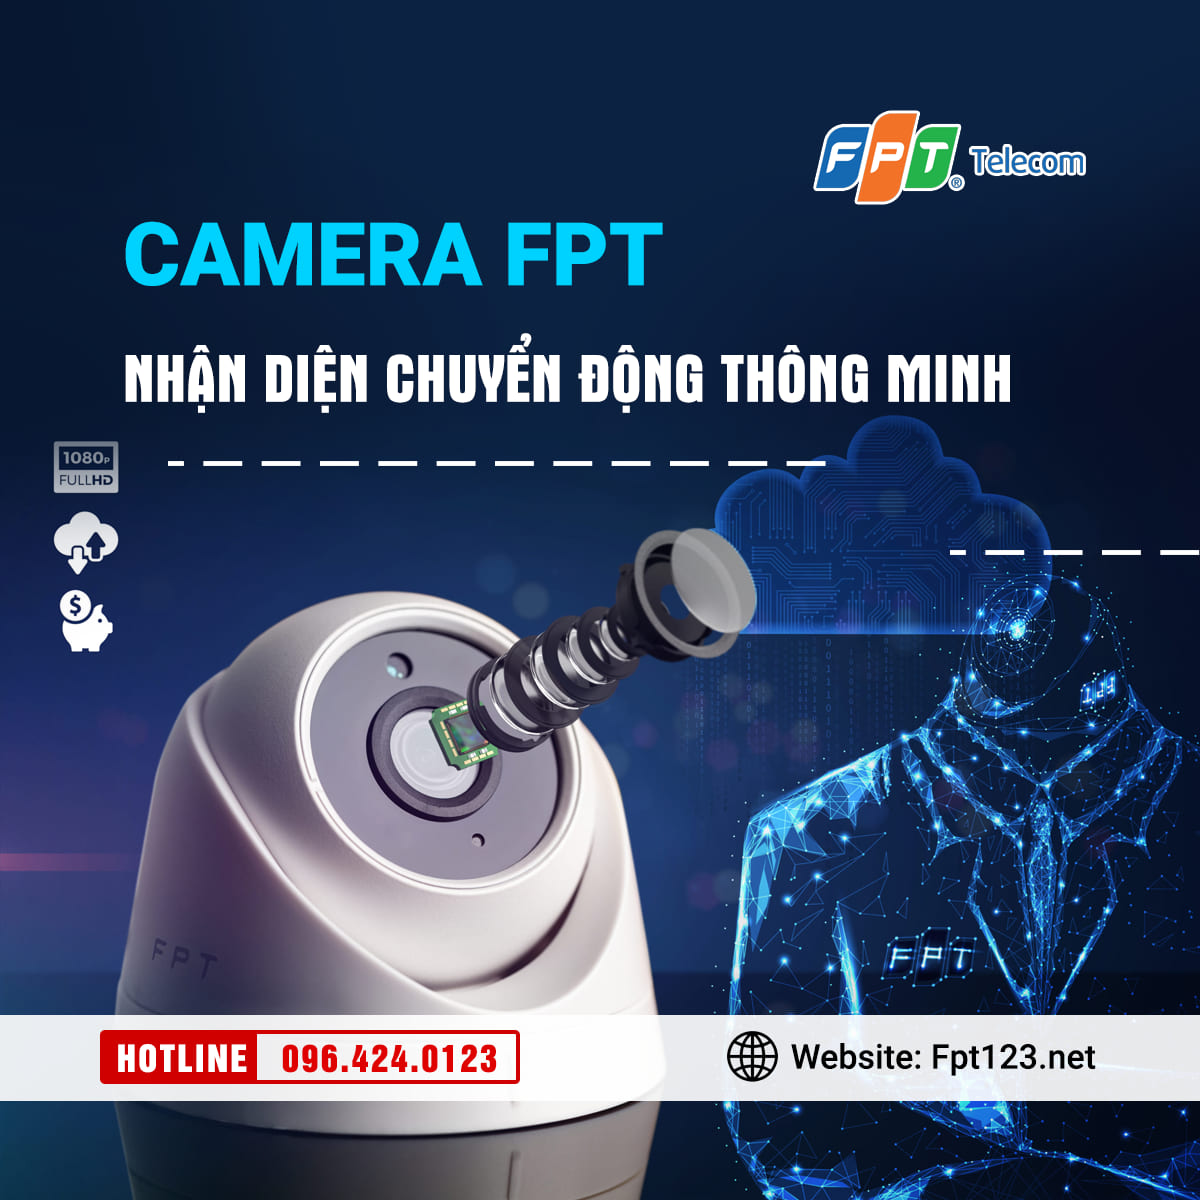 Camera FPT với trí tuệ nhân tạo AI nhận diện chuyển động